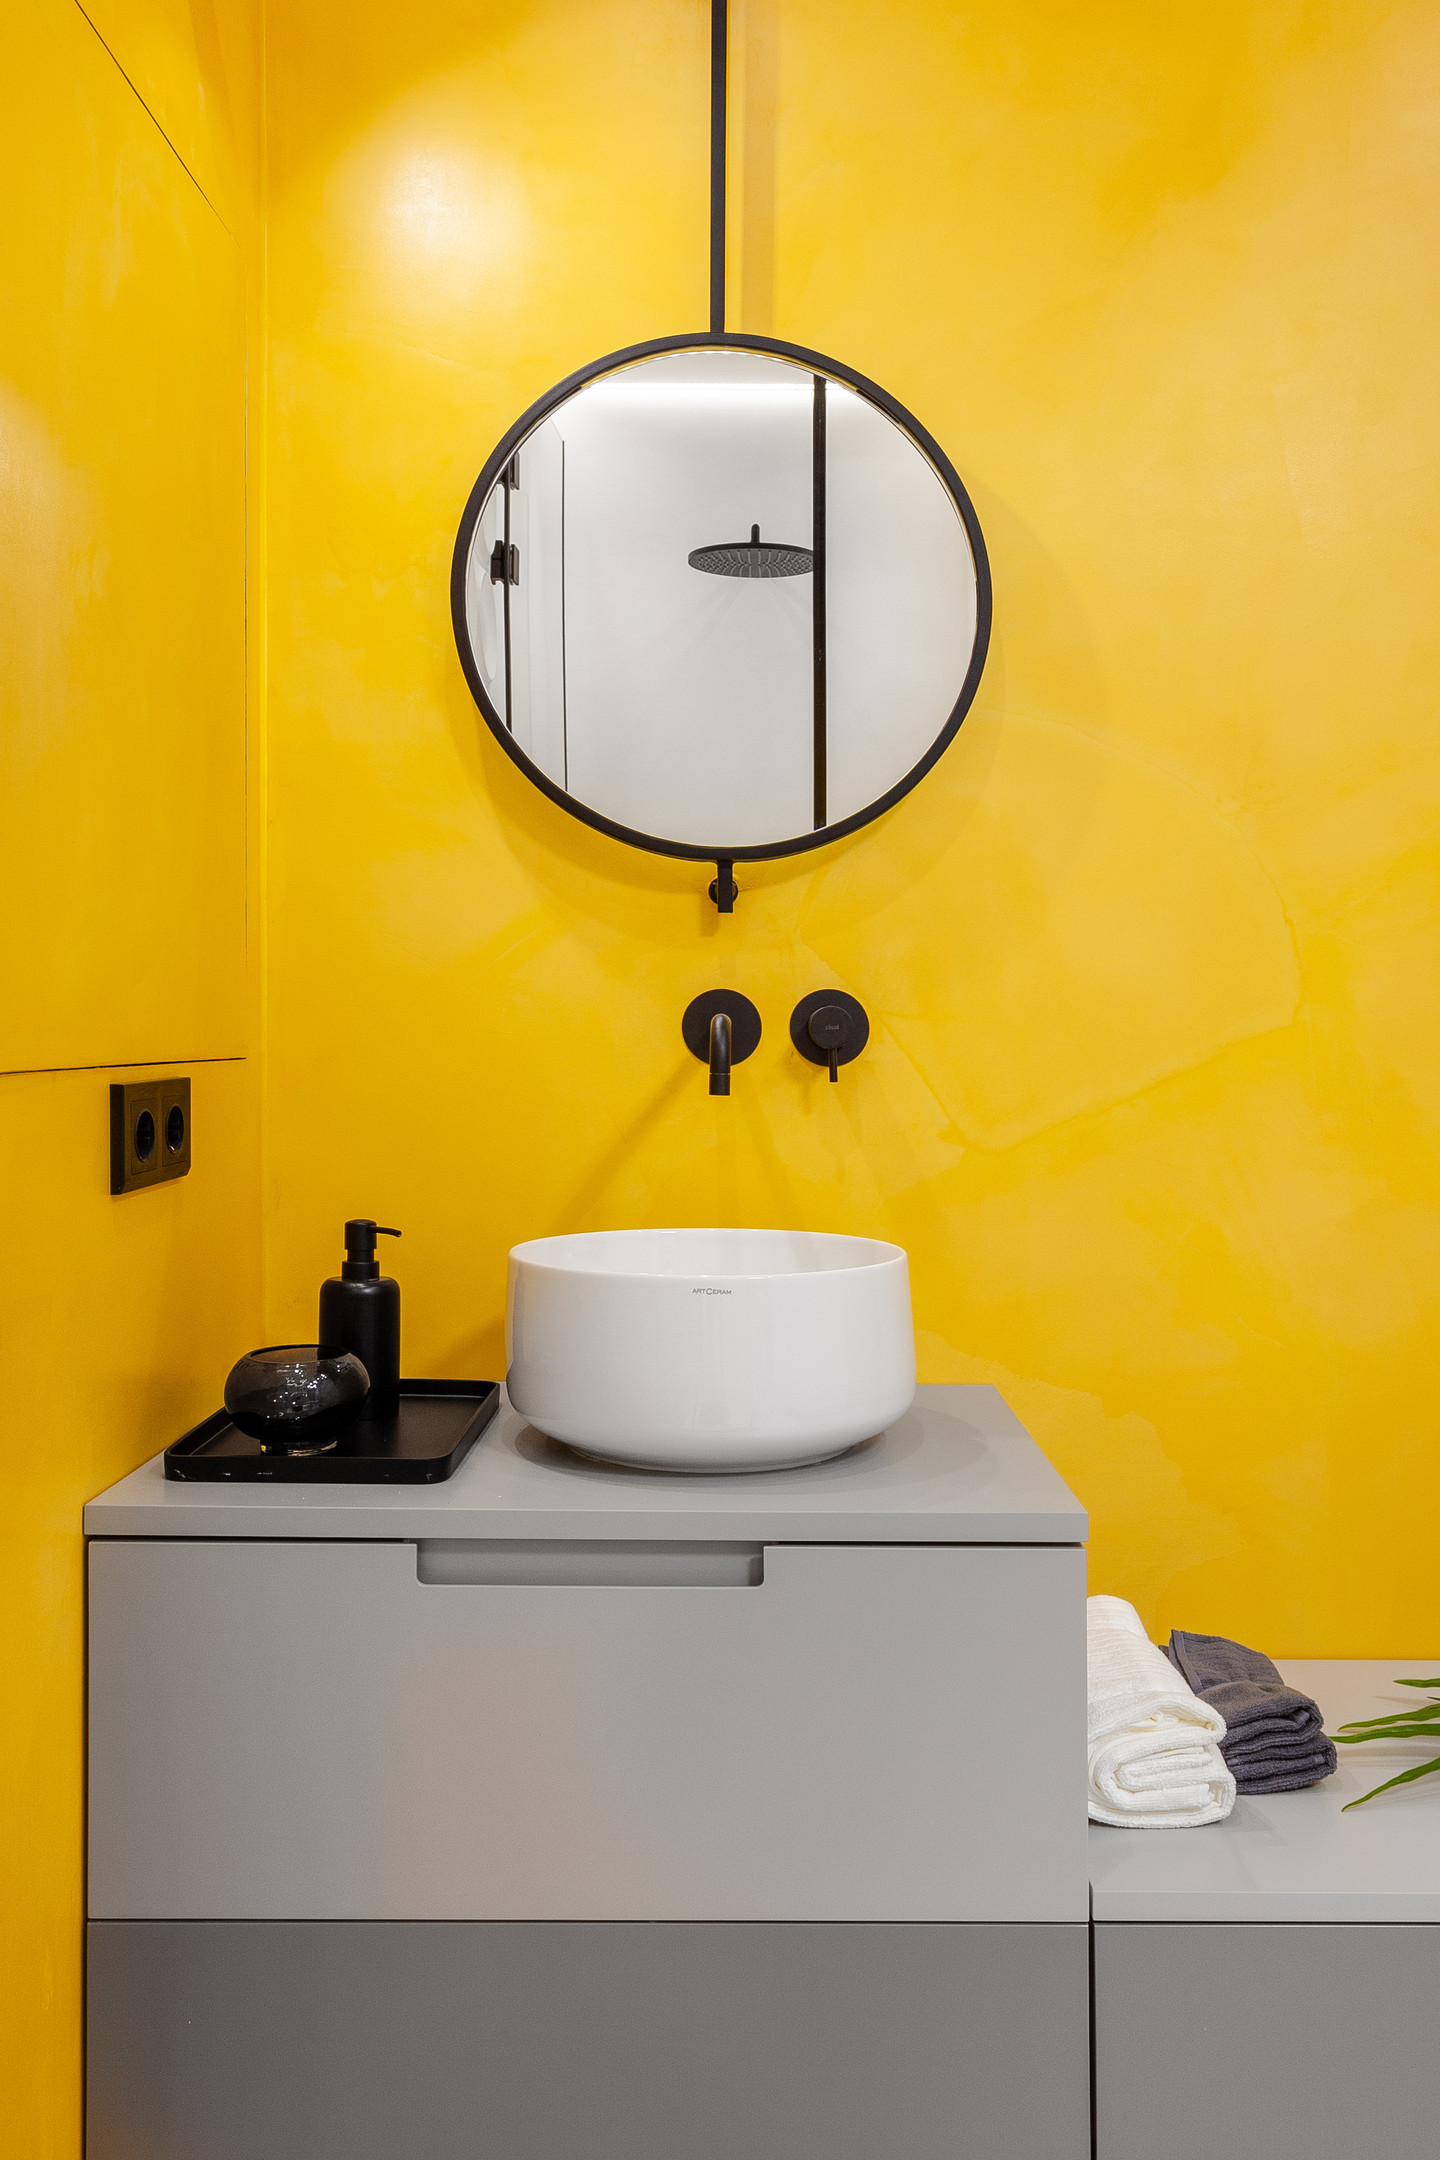 Nếu gam màu xám mang lại sự thanh lịch thì màu vàng lại rất trẻ trung. Ở phòng tắm này, tường phòng tắm sơn kín một sắc vàng, riêng tủ lưu trữ màu xám cùng vài chi tiết nhỏ màu đen tuyền khiến nó trở nên có tiết chế và sang trọng hơn.